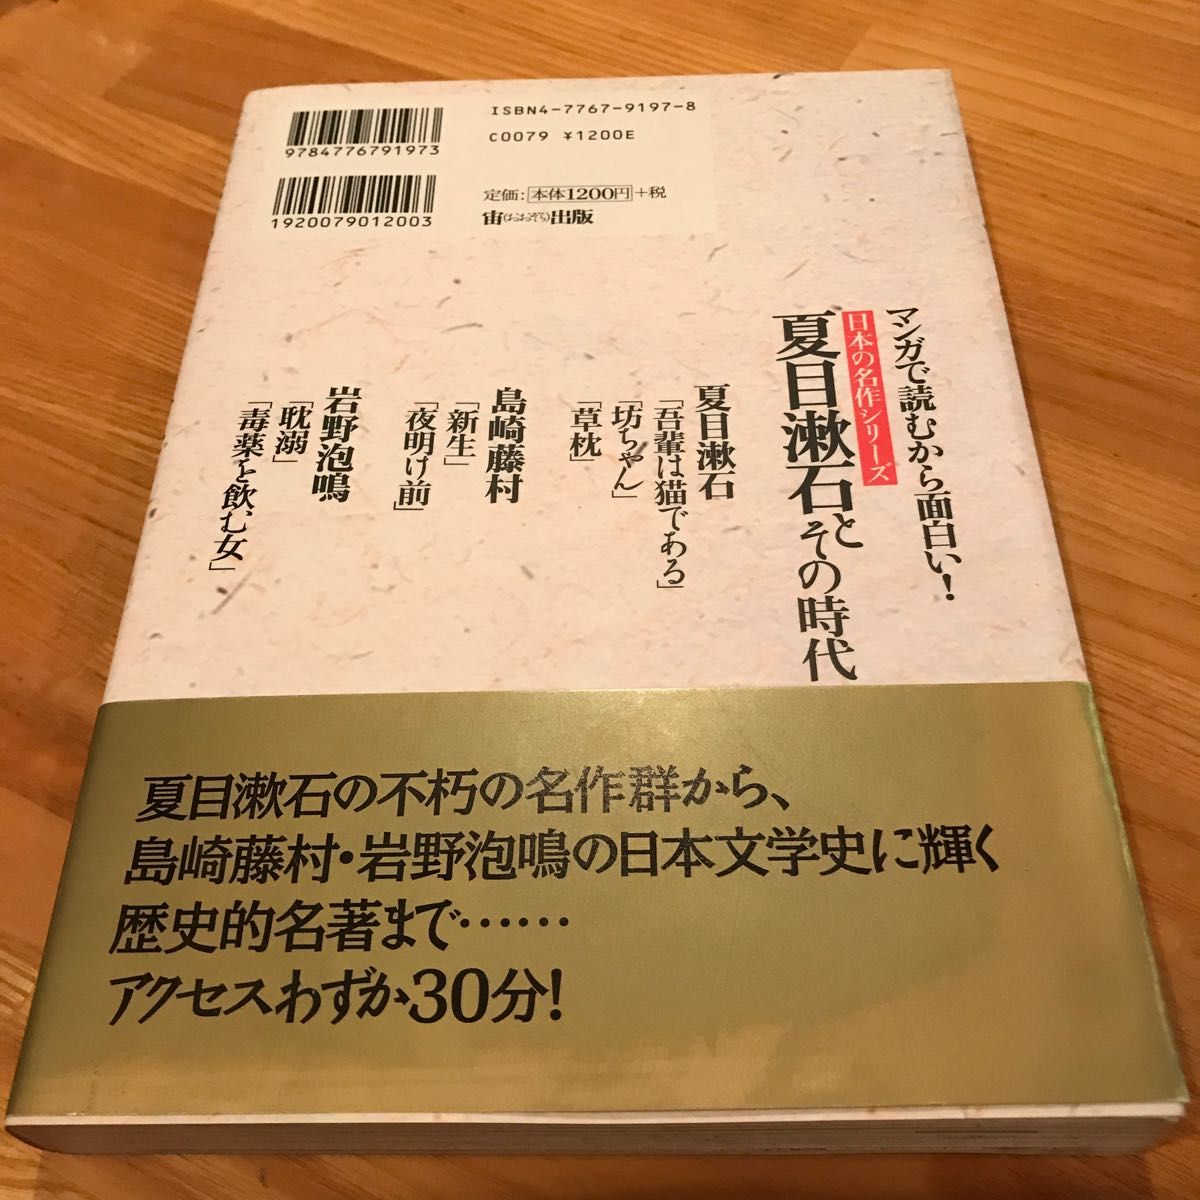 夏目漱石とその時代 マンガで読むから面白い！ 日本の名作シリーズ／不知火プロダクション (編者) 畑有三 (その他)